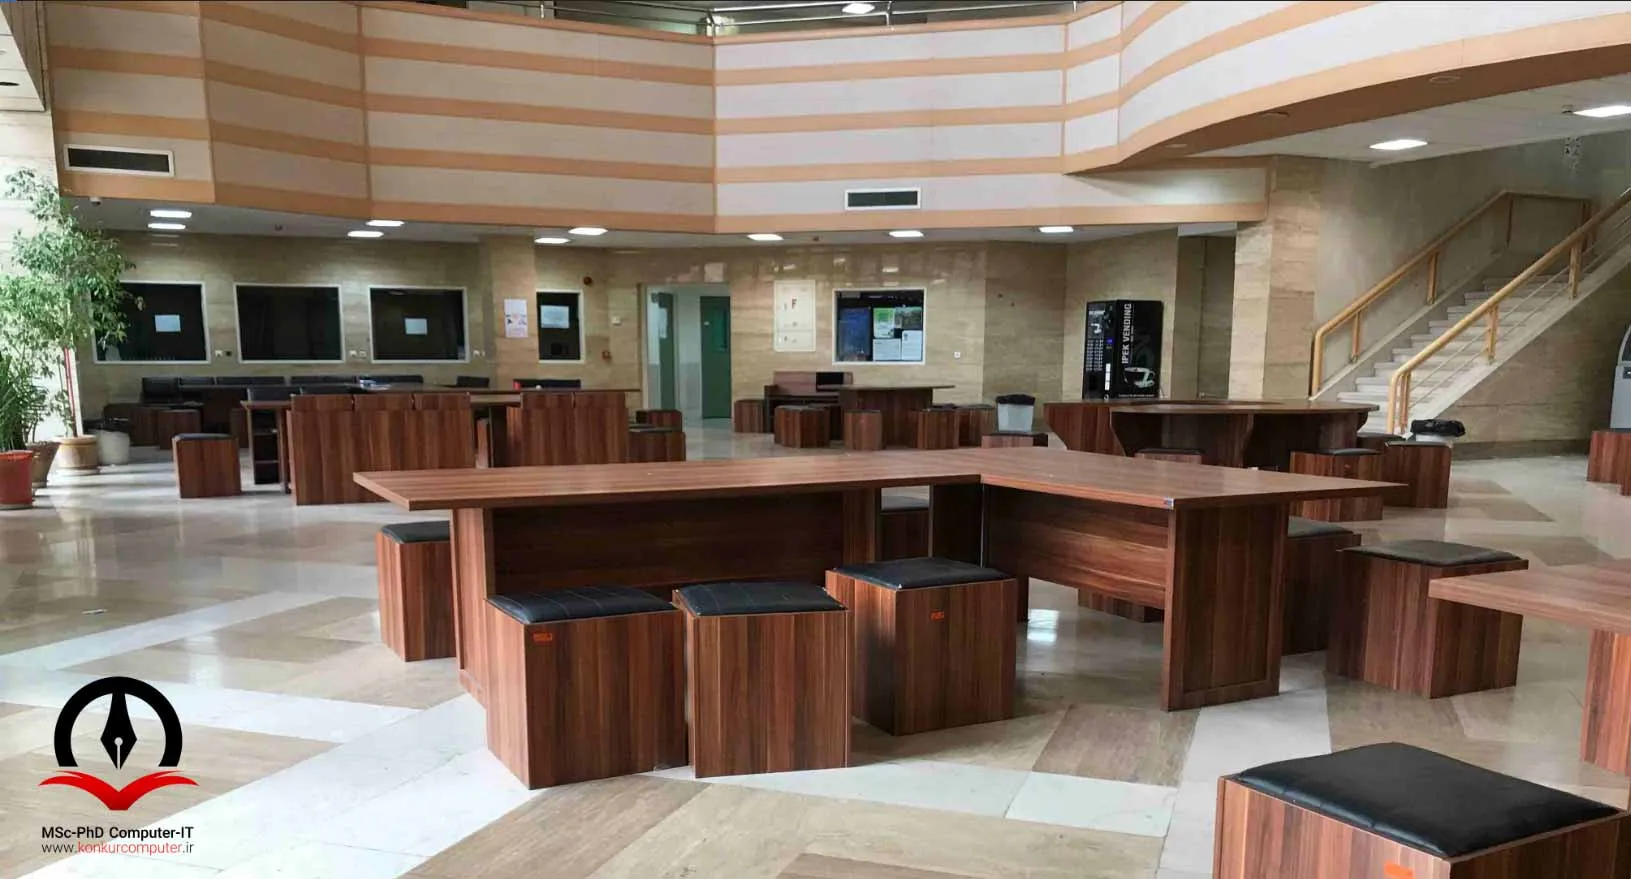 لابی دانشکده کامپیوتر دانشگاه شریف دارای امکانات زیادی جهت رفاه دانشجویان است.